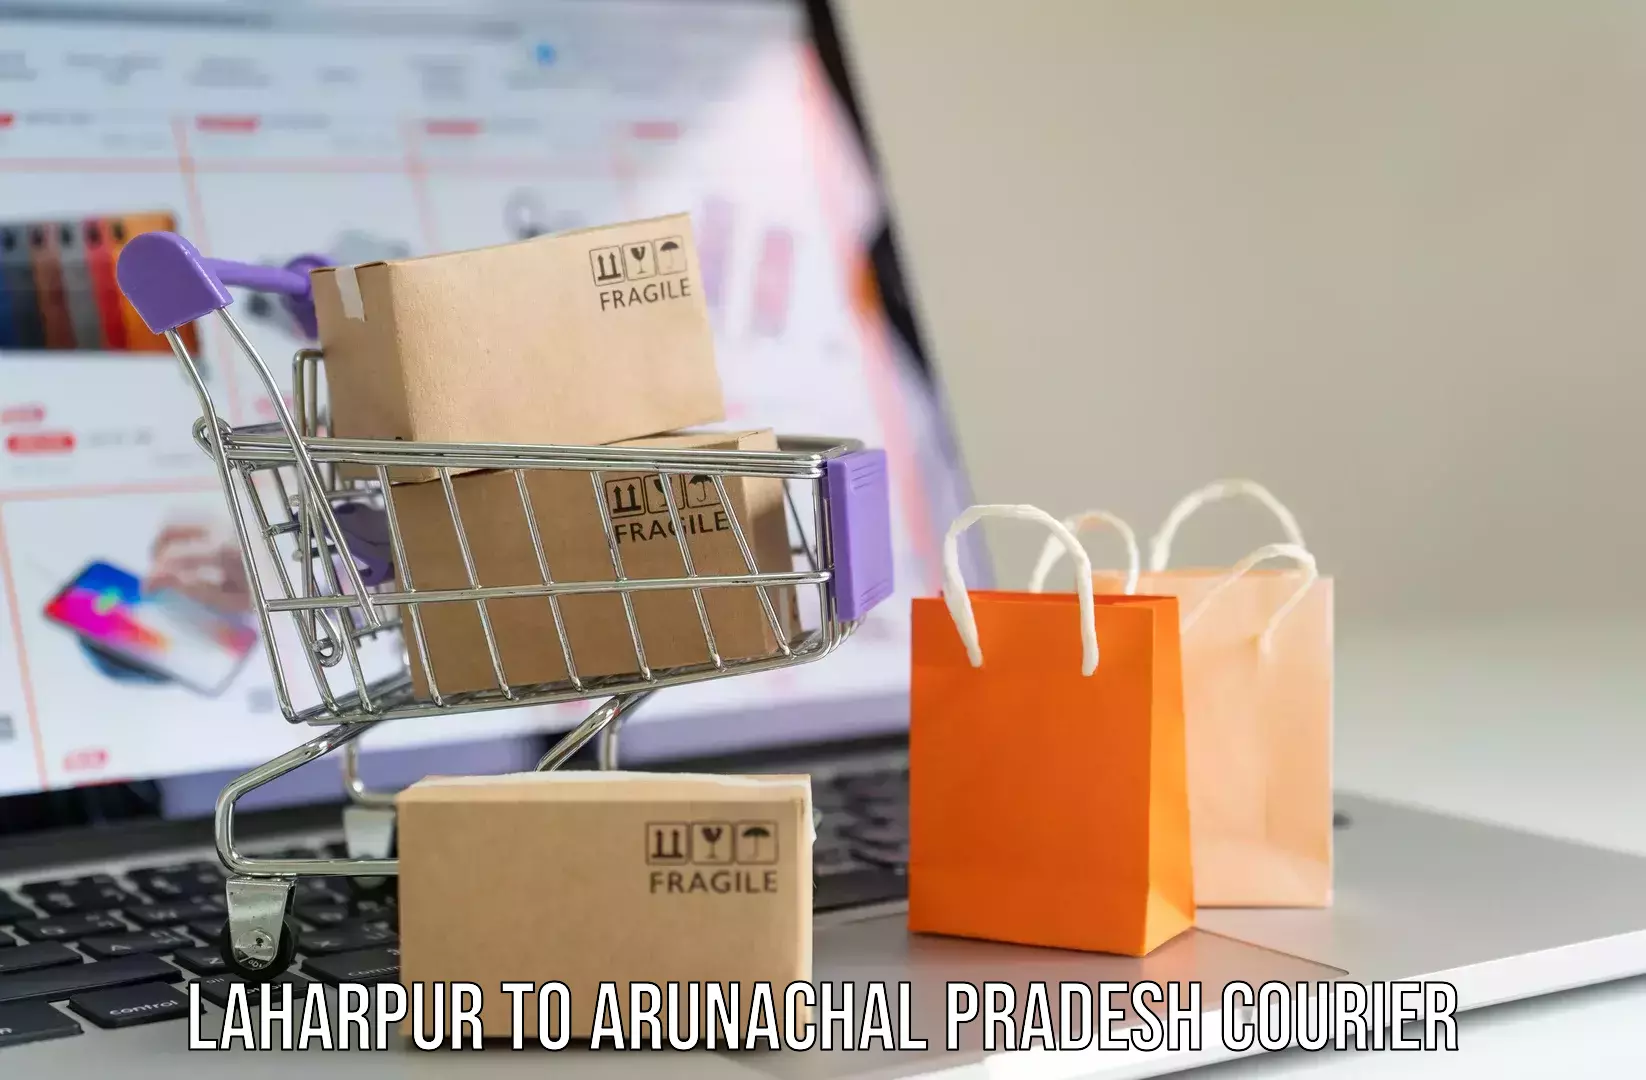 Luggage transfer service Laharpur to Jairampur